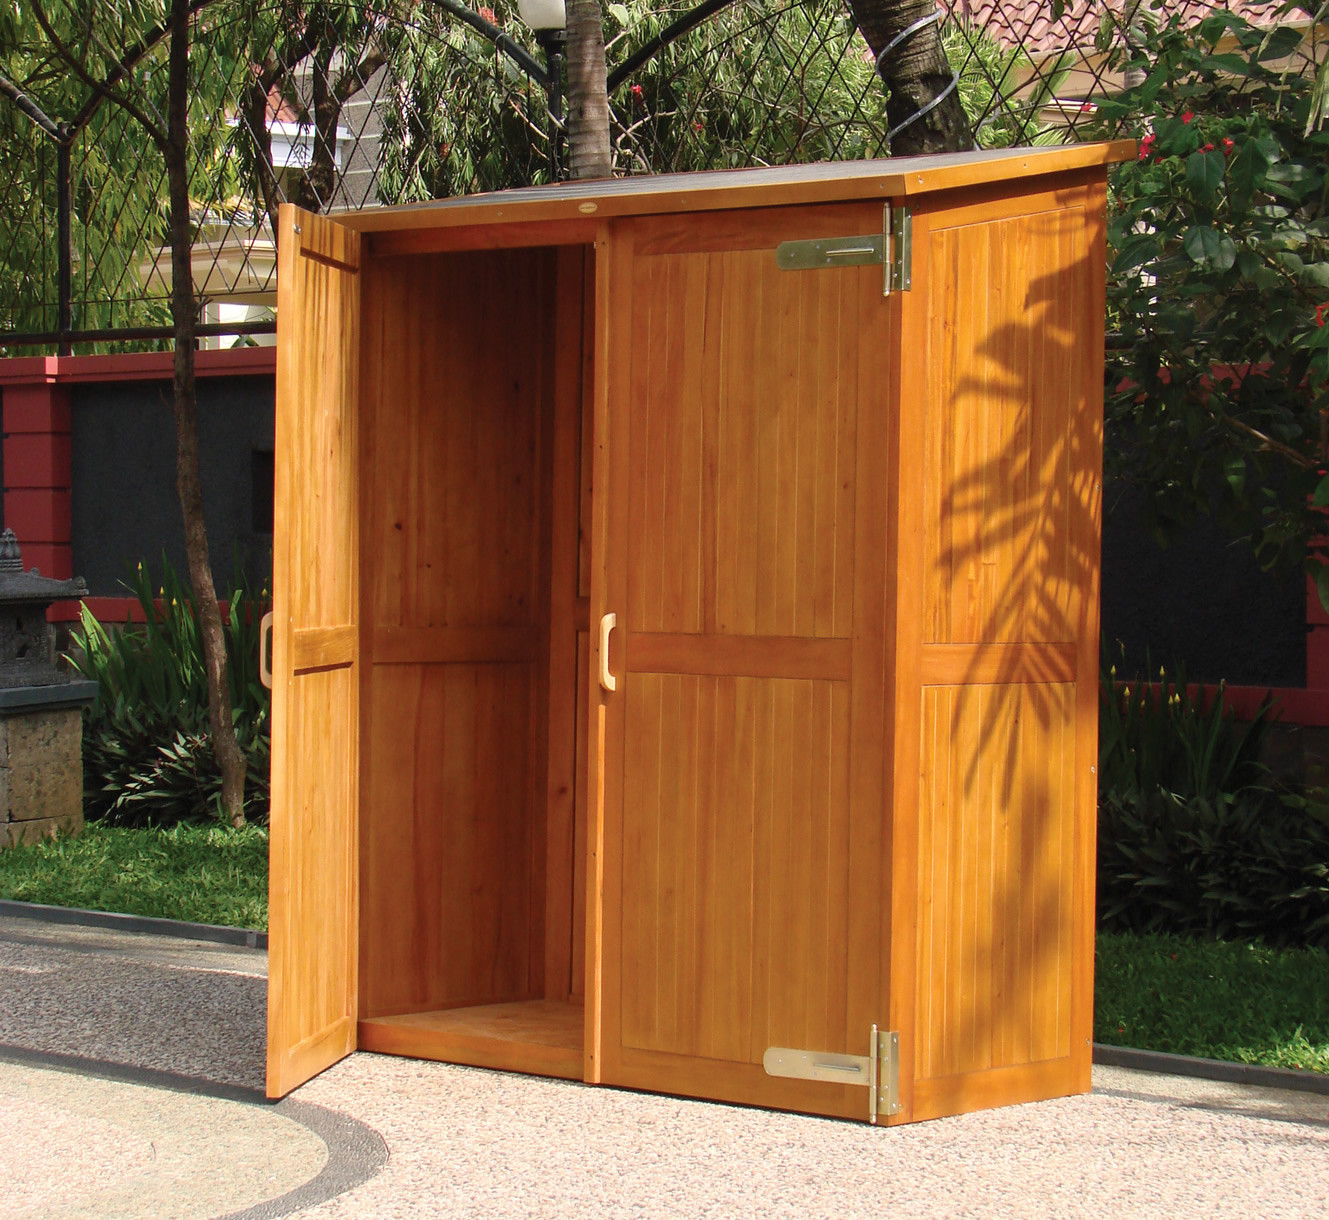 Best ideas about Garden Storage Cabinet
. Save or Pin Hardwood Garden Storage Cabinet Now.